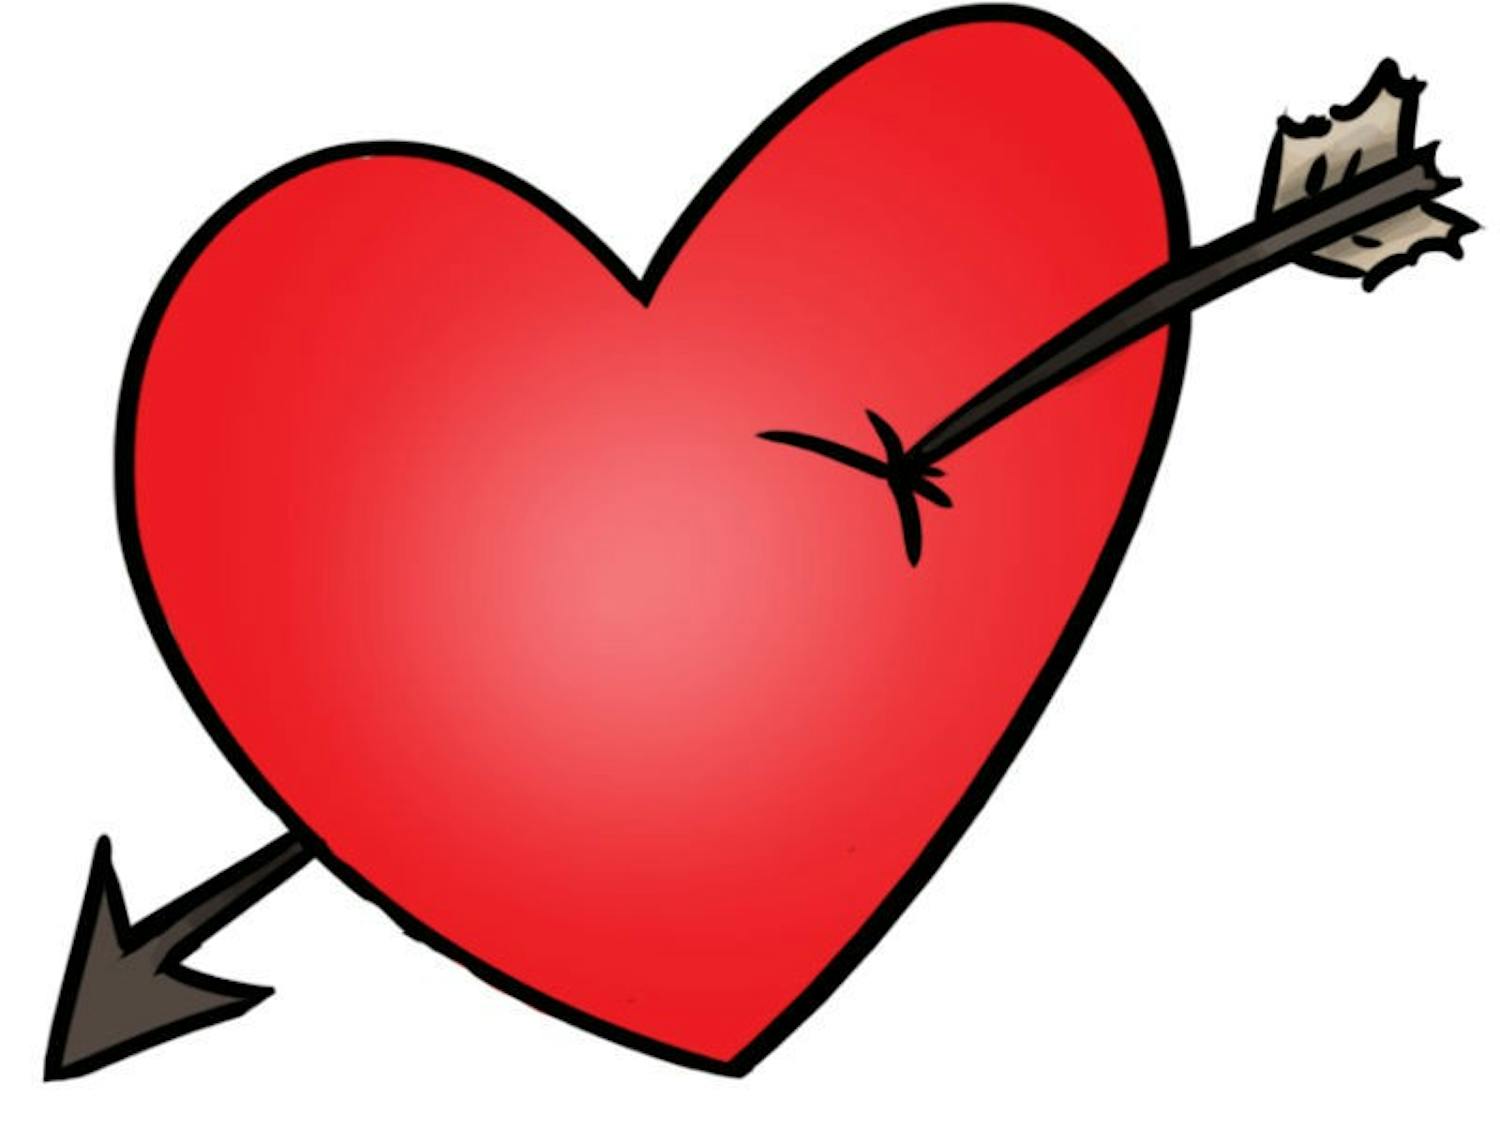 Valentine's heart 02112014